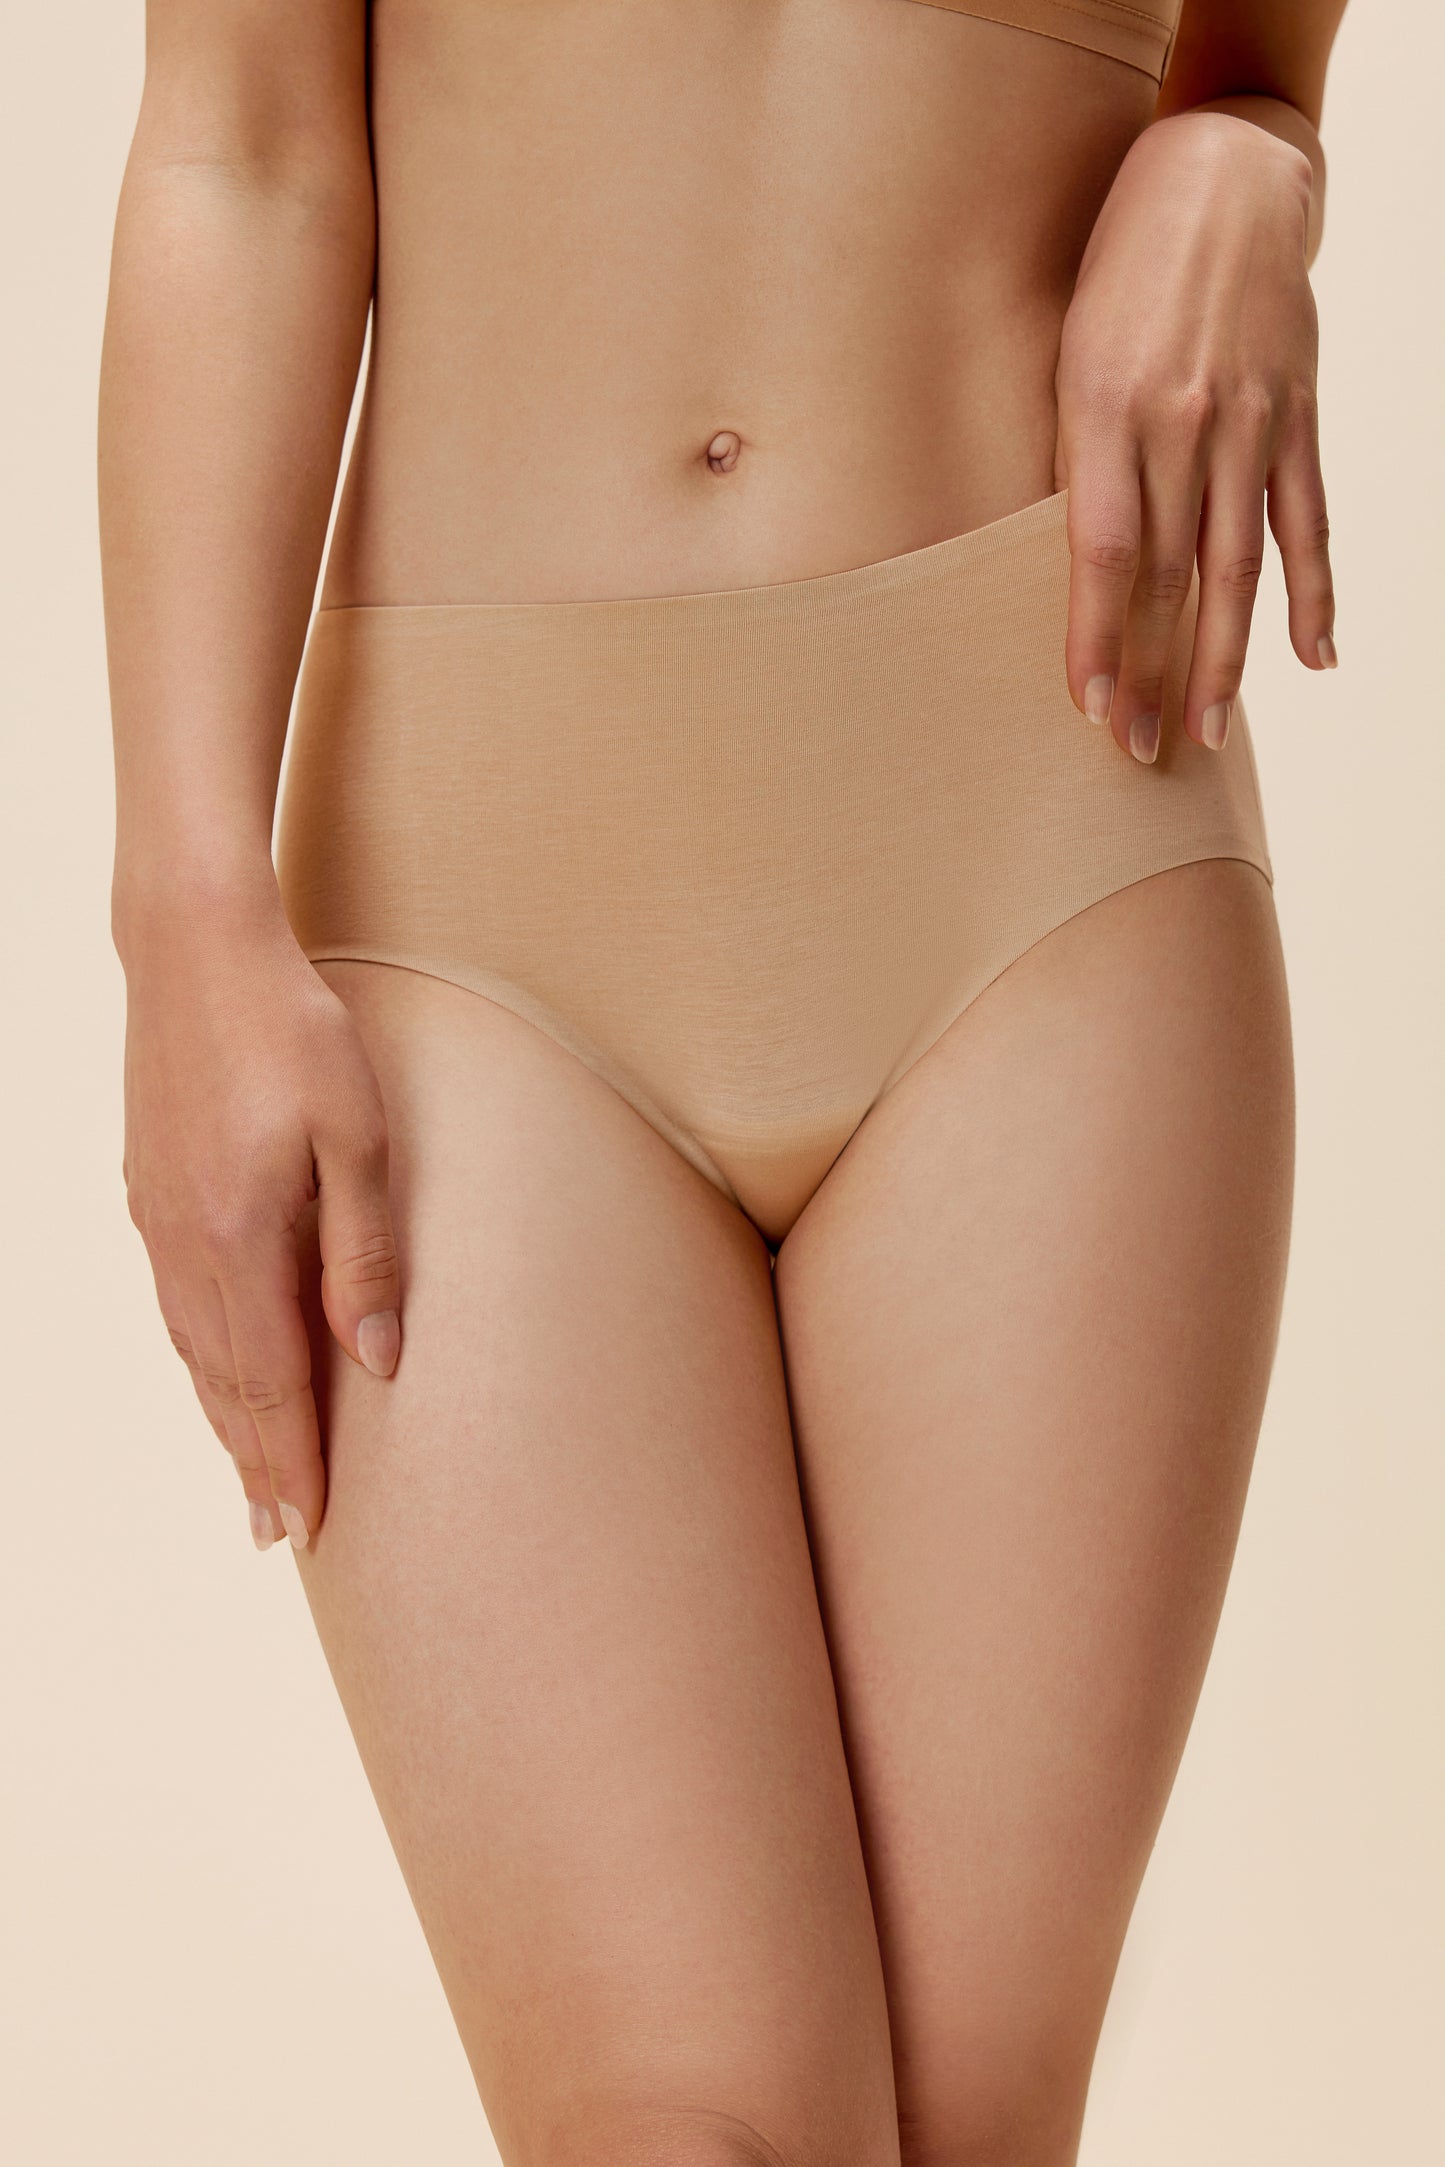 woman in tan underwear